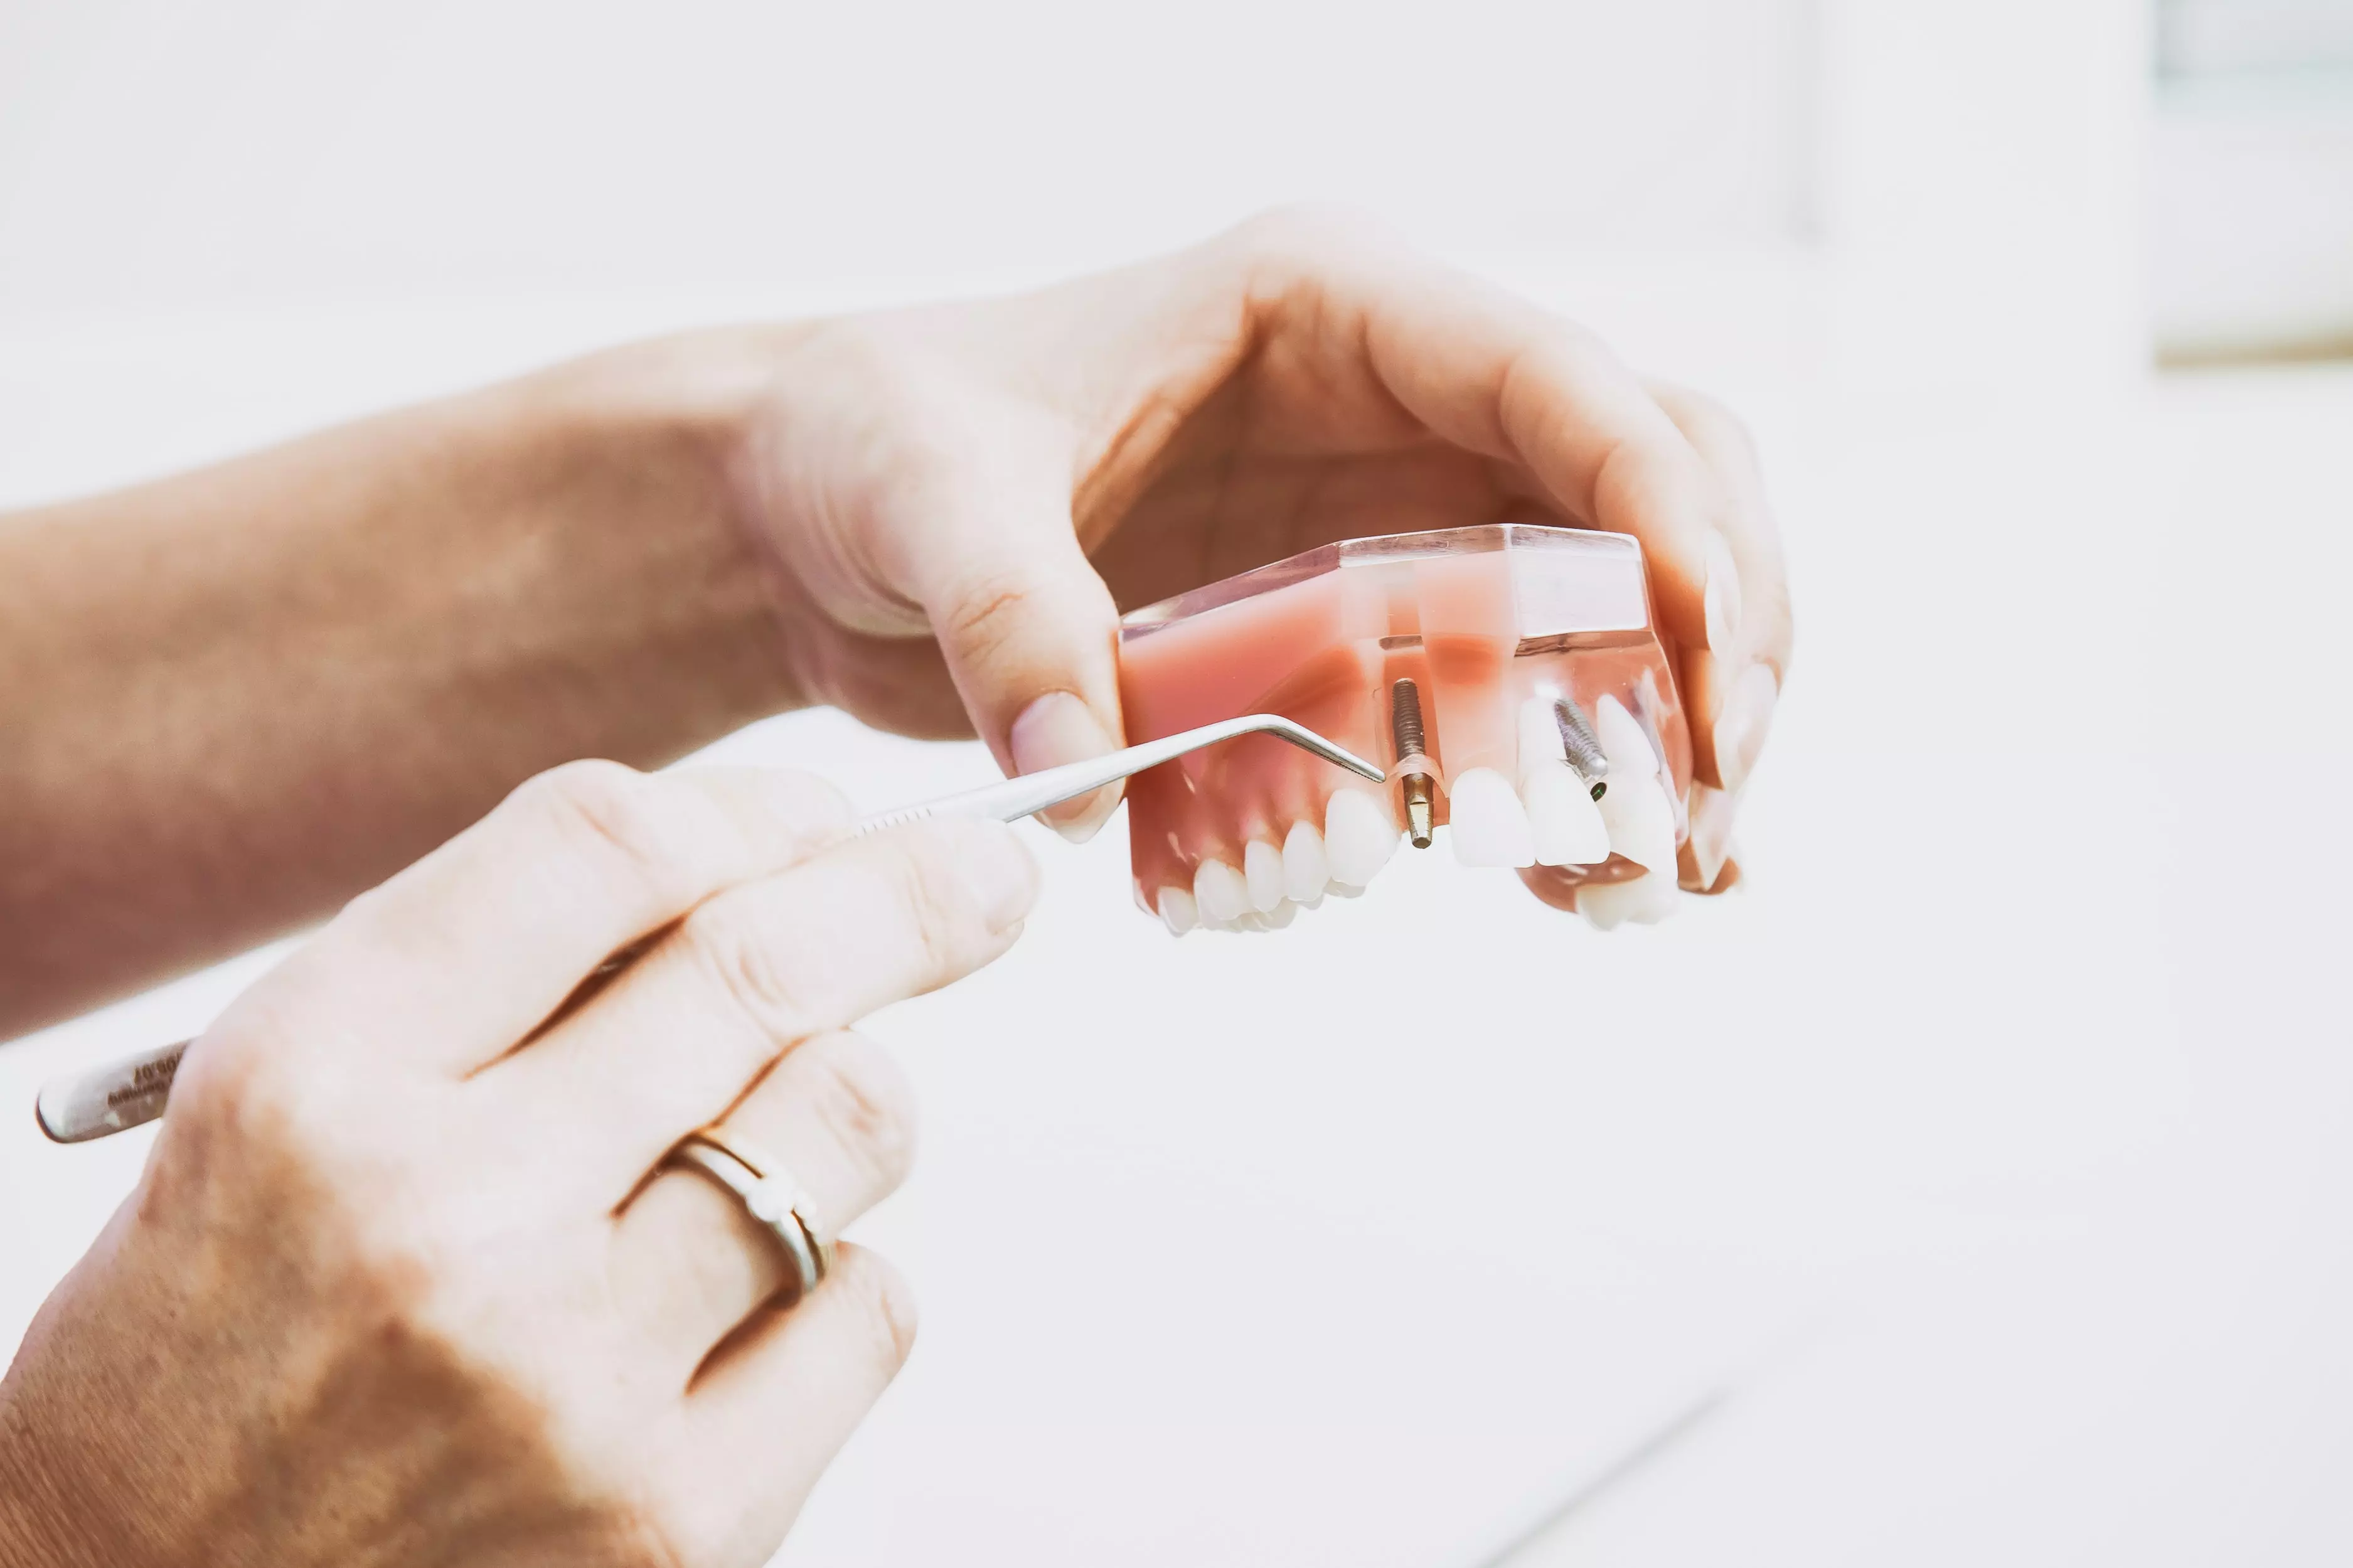 le marché des implants dentaires